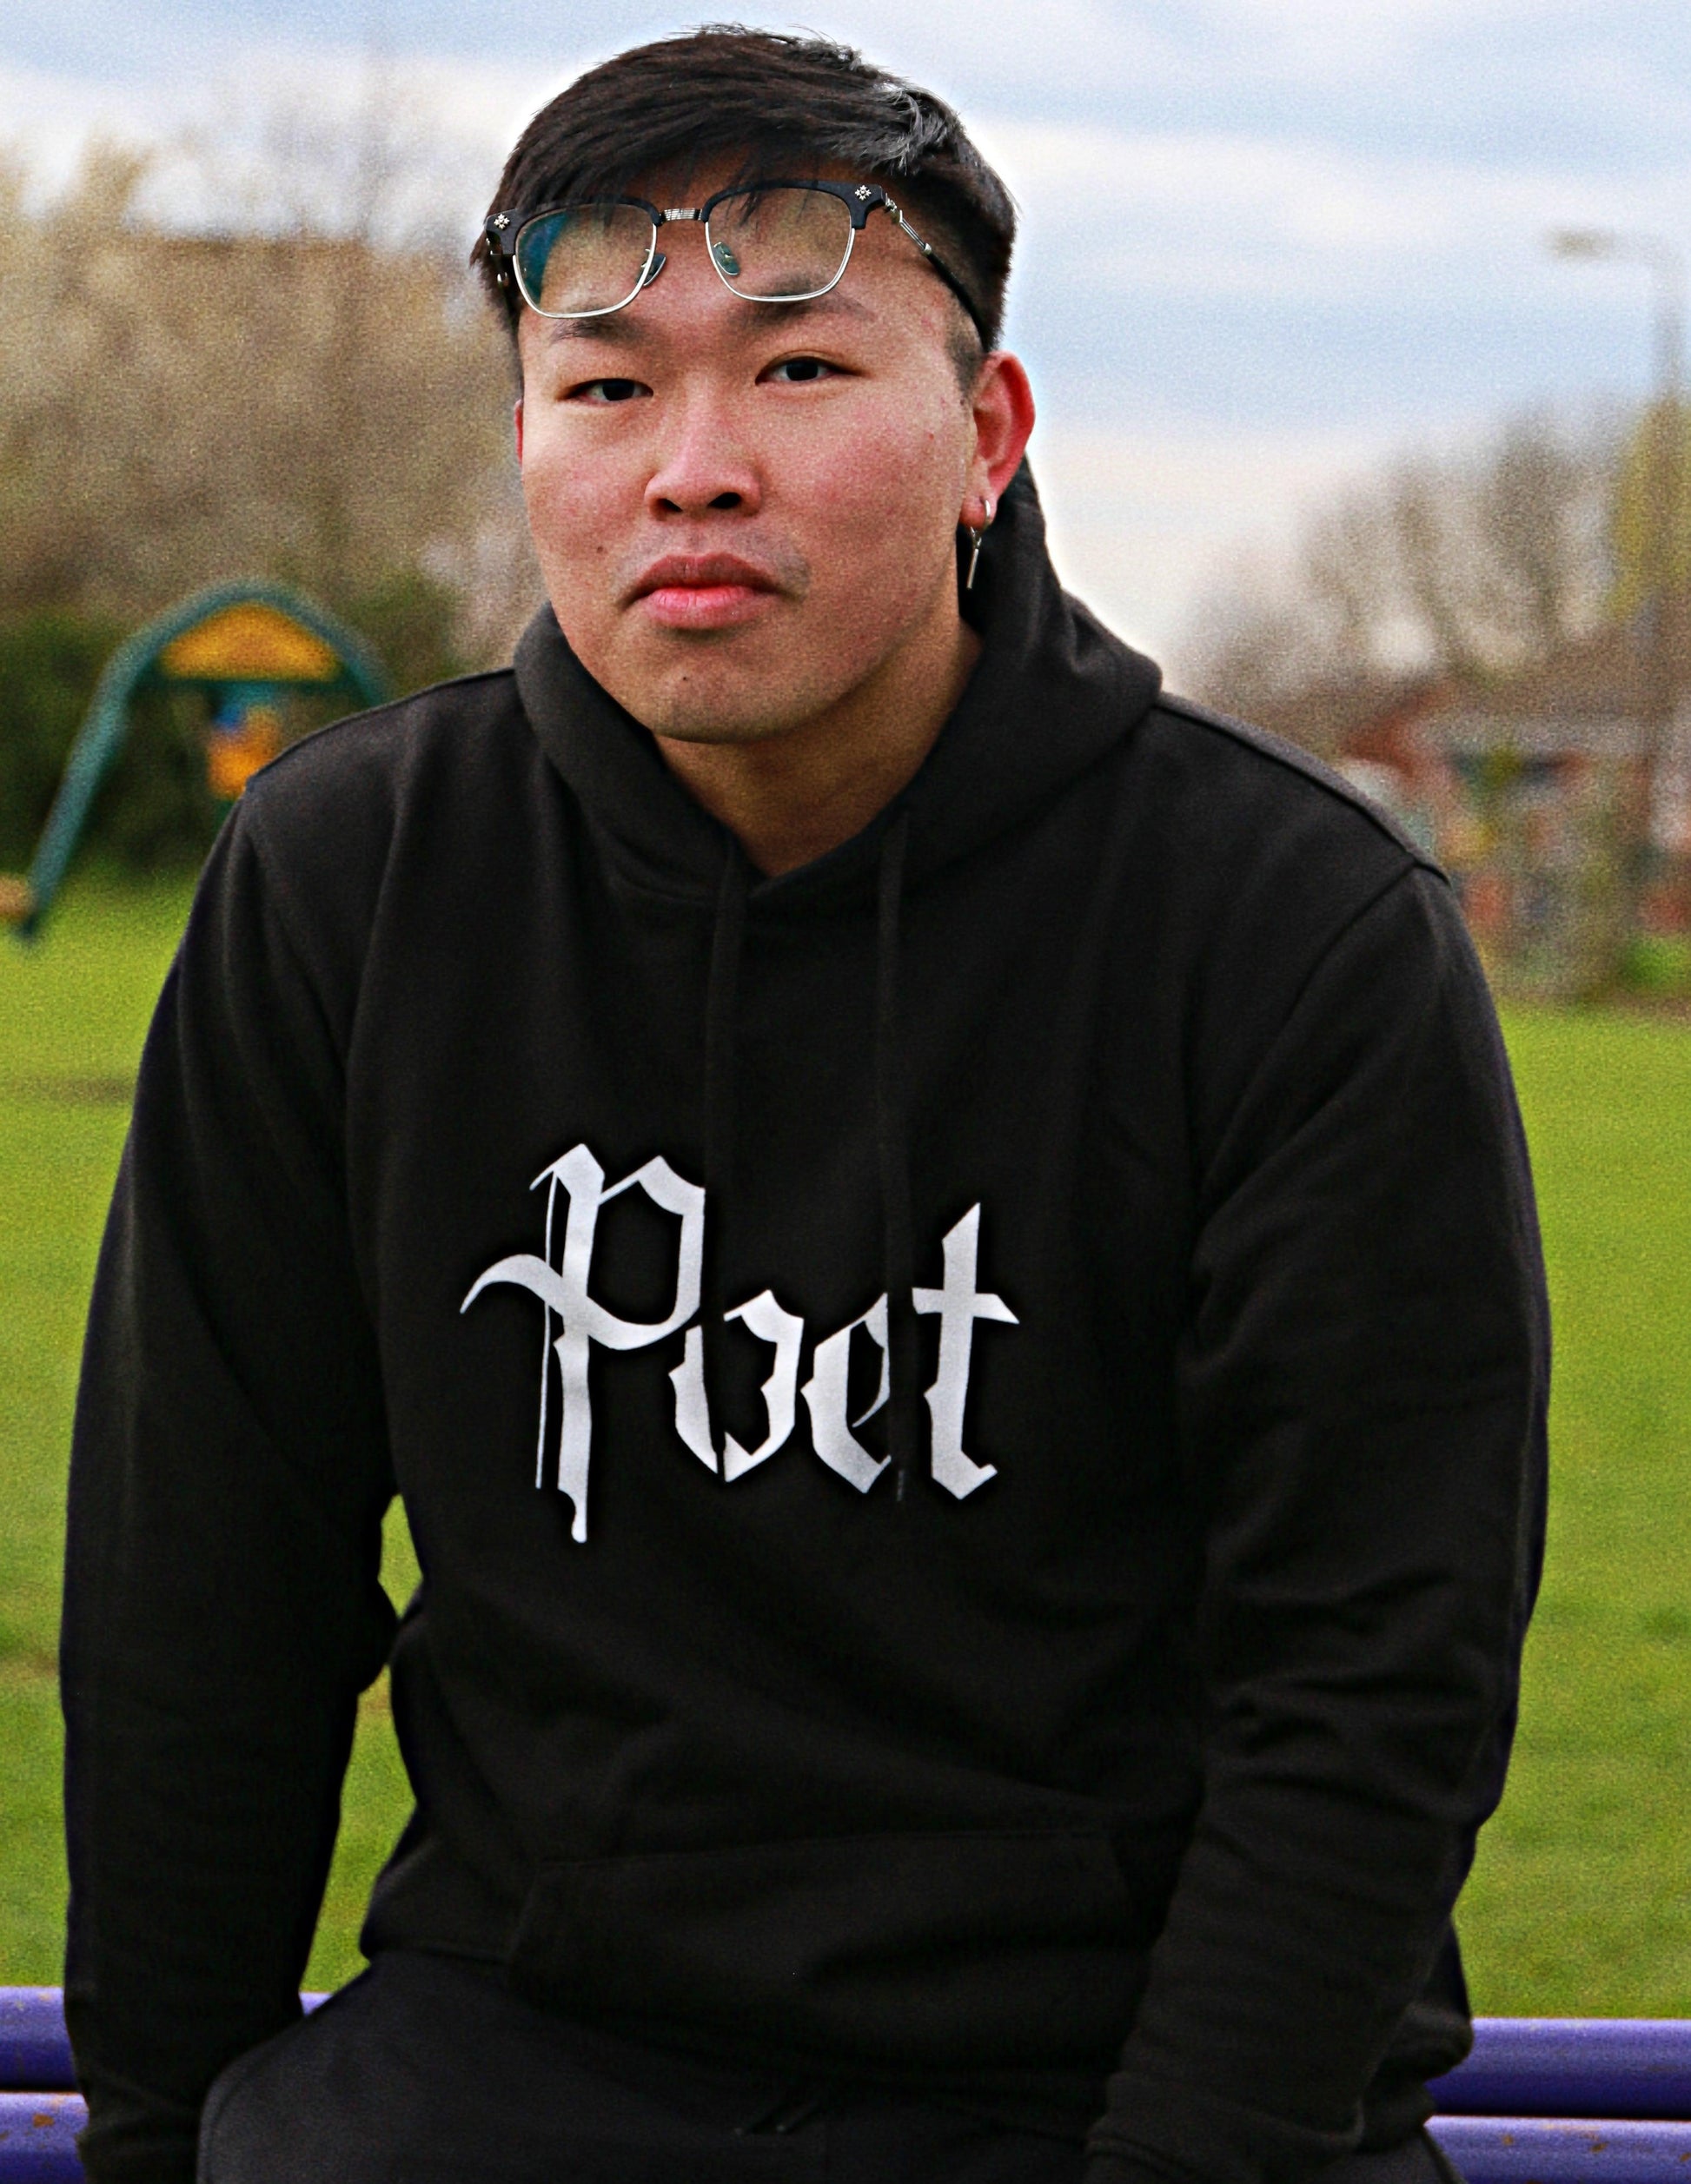 Poet hoodie - Poet Archives